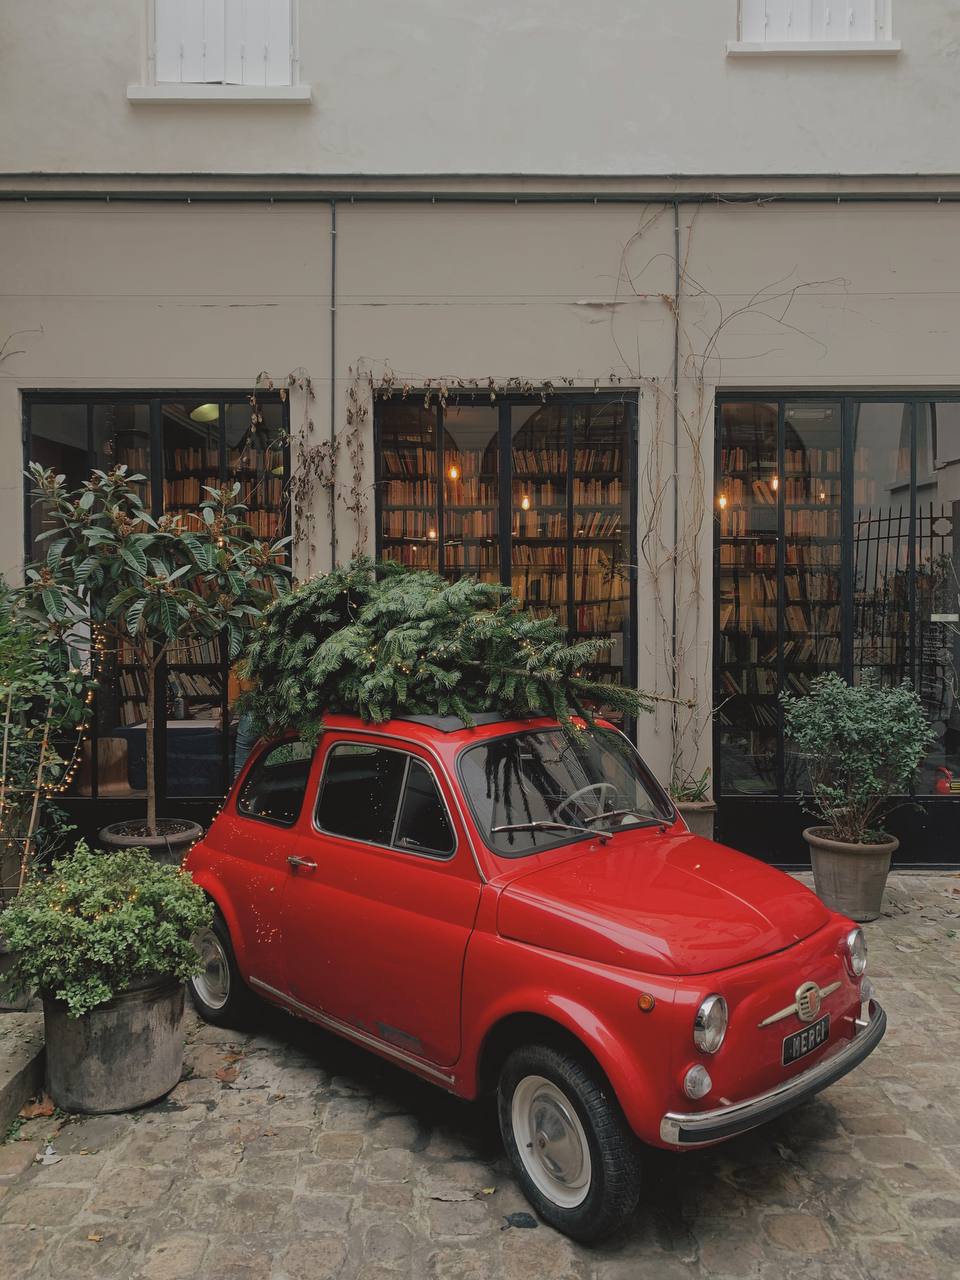 Red vintage car in Paris